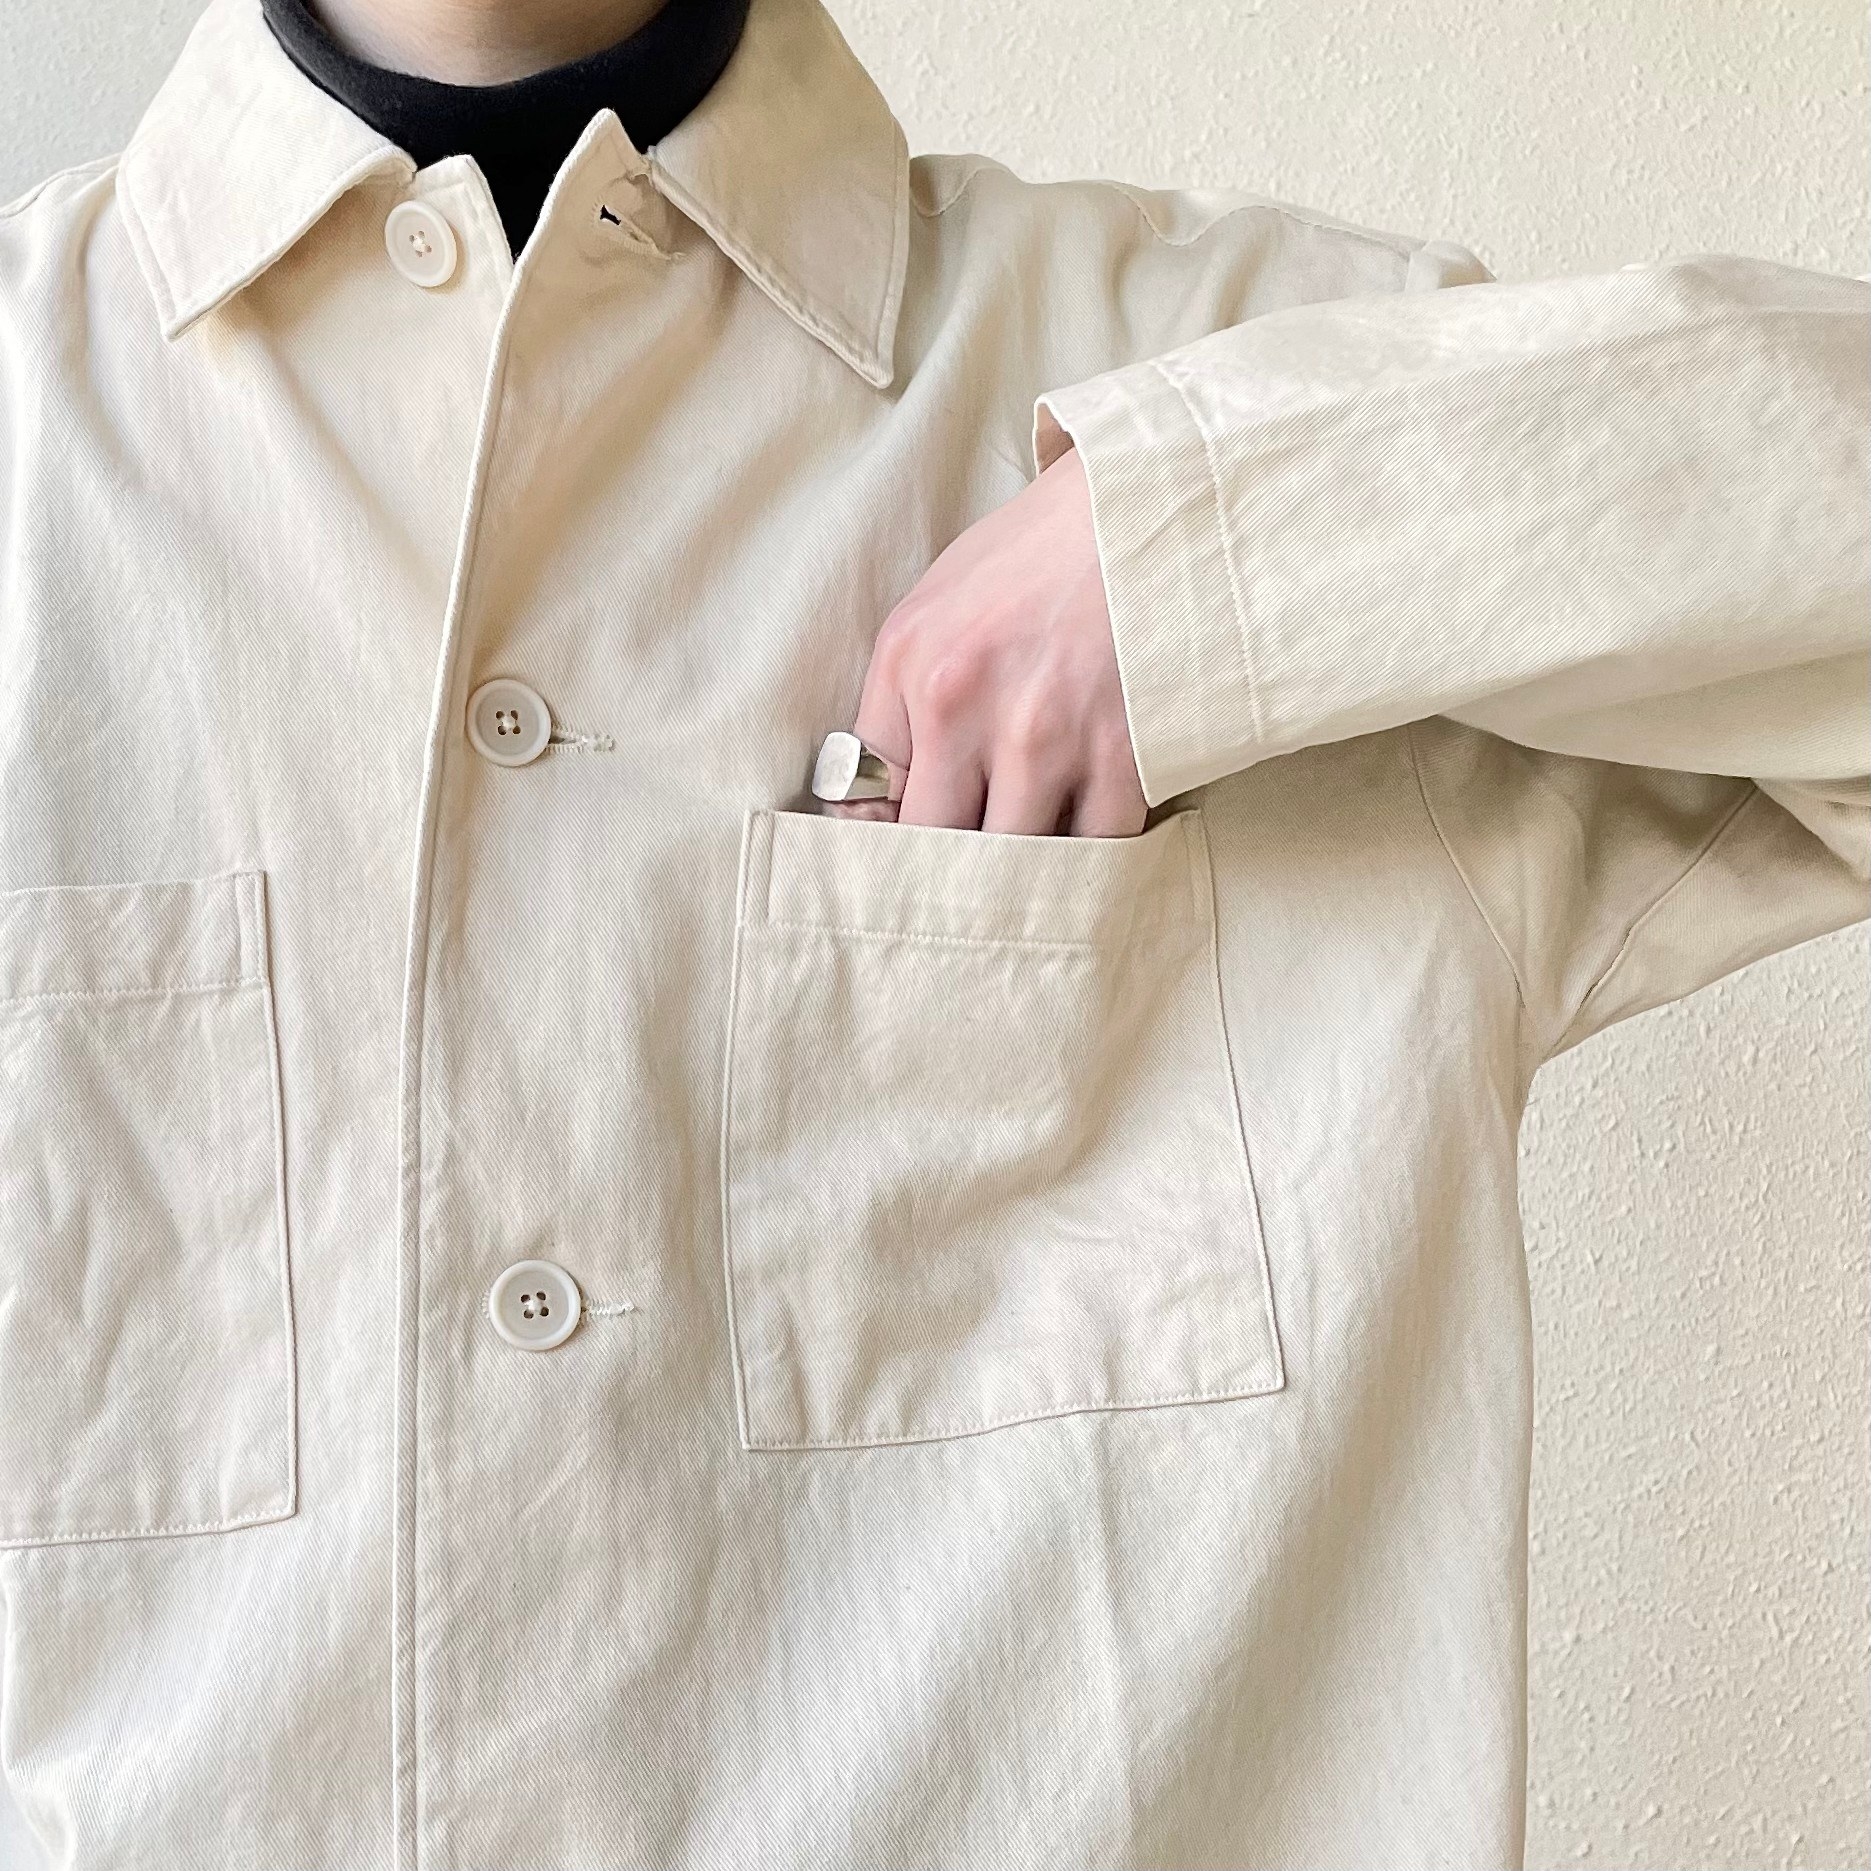 無印良品のおすすめのメンズアイテム「木の実から作ったカポック混シャツジャケット」